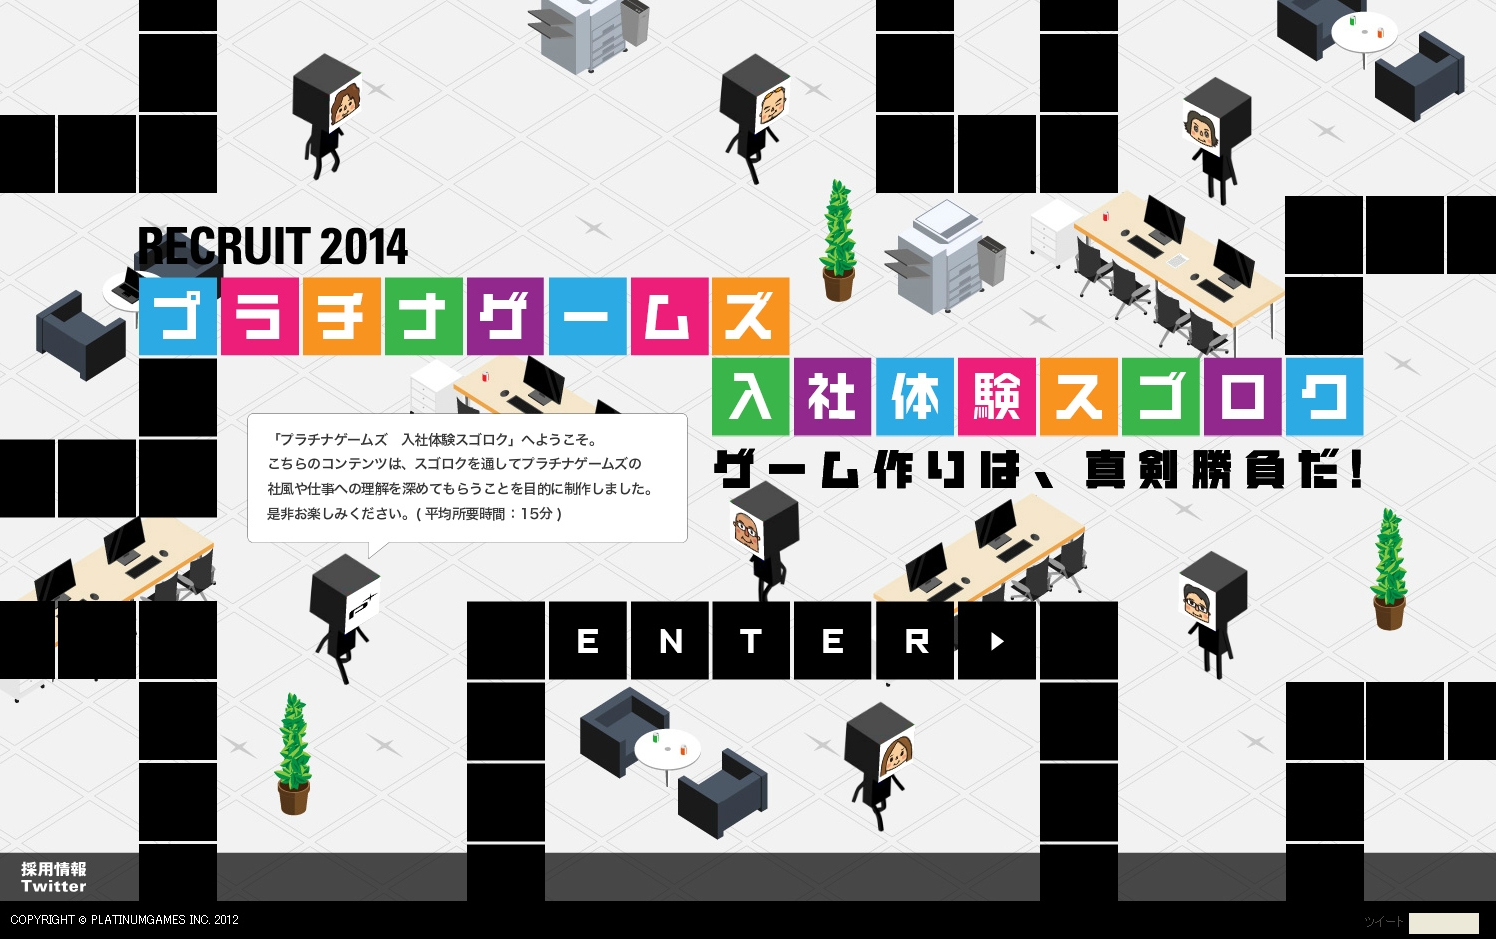 日本白金游戏2014校园招聘。提高企业文化的理解